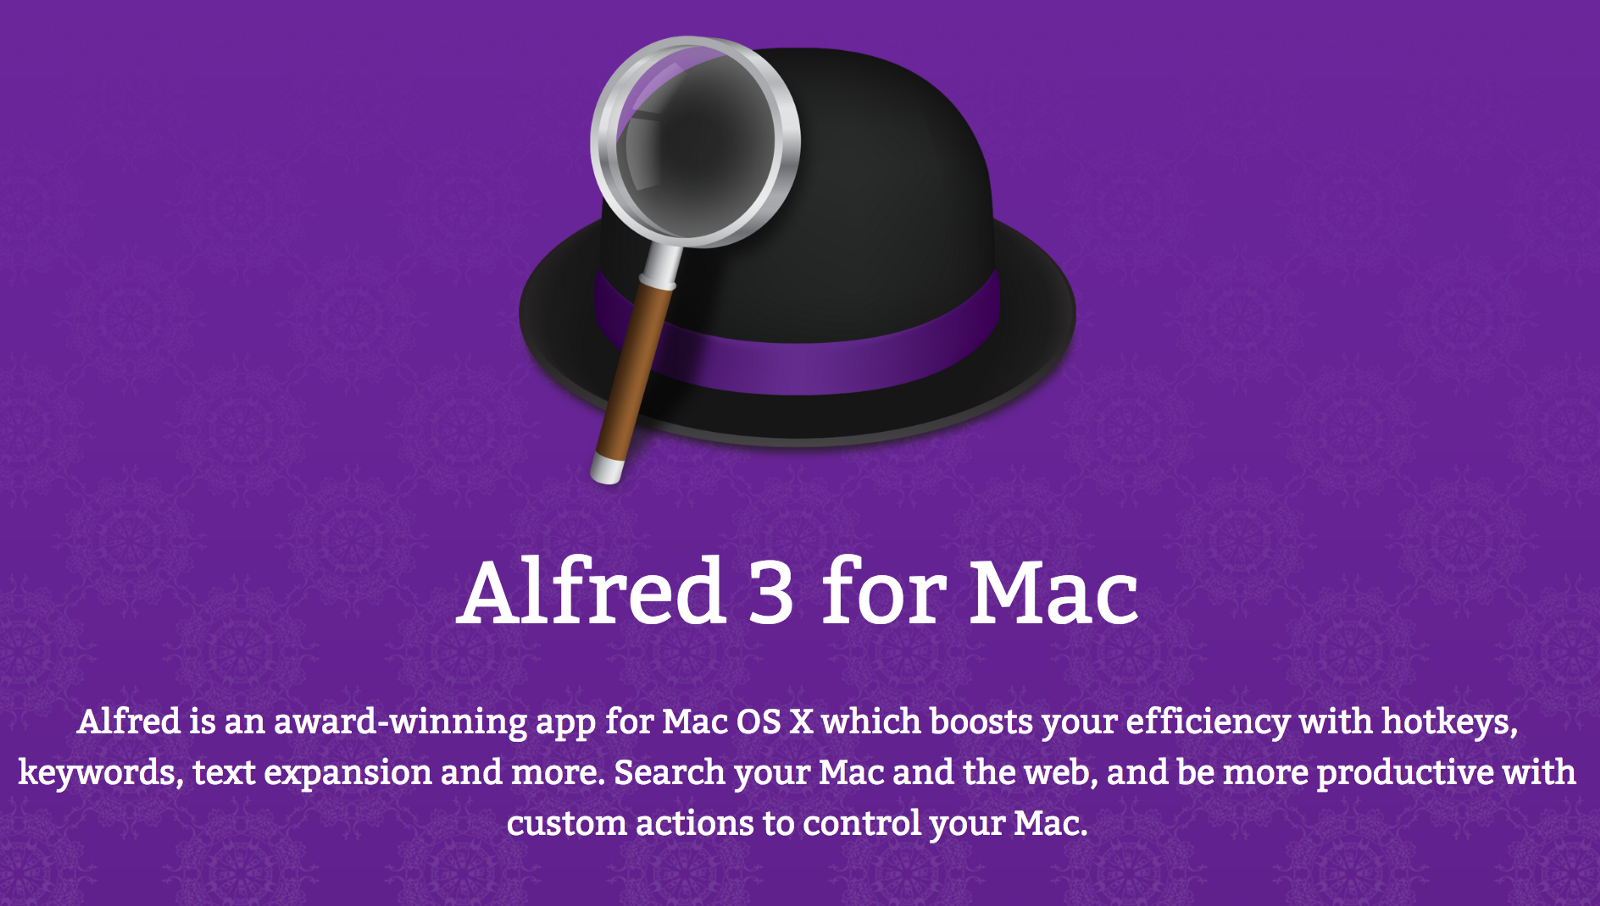 App Like Alfred For Mac